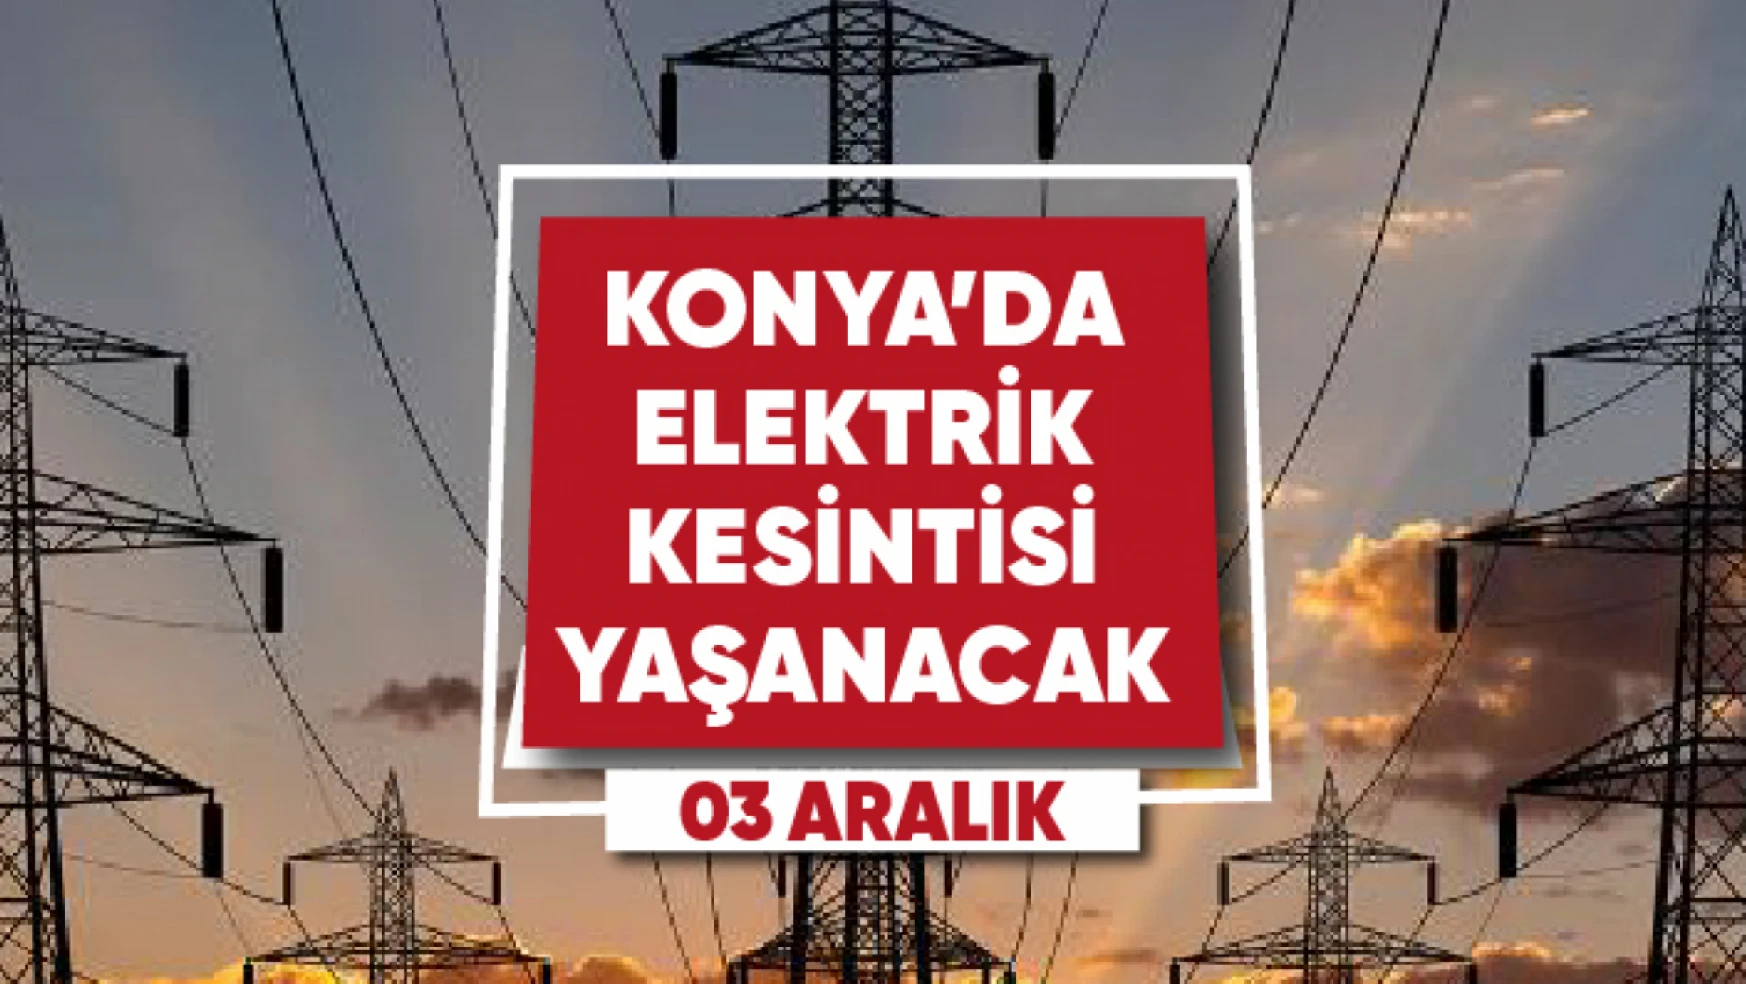 Konya'da elektrik kesintisi yaşanacak mahalle ve sokaklar (3 Aralık)